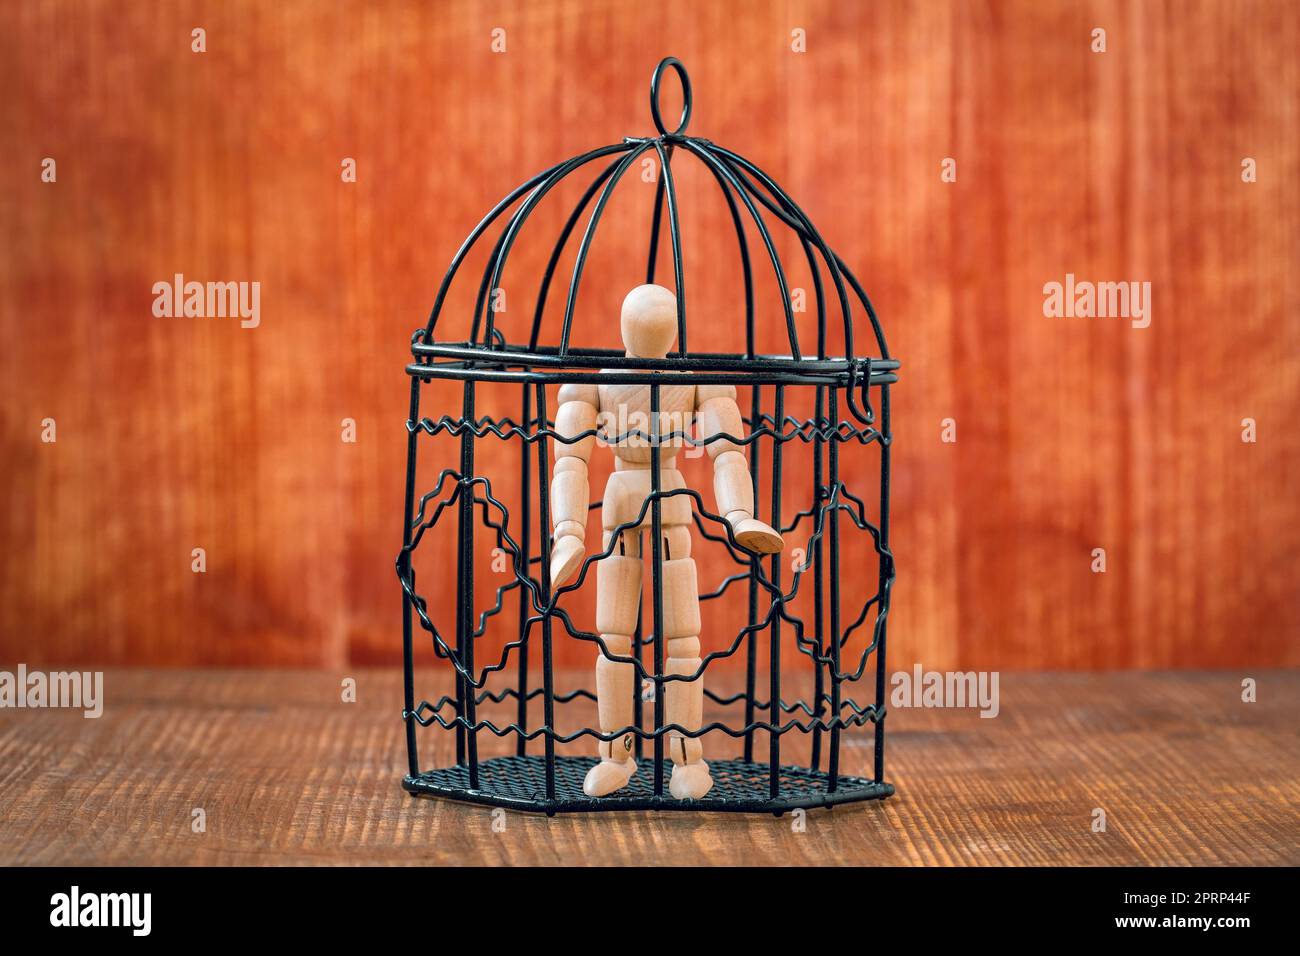 Manichino in legno all'interno di una gabbia per uccelli Foto Stock